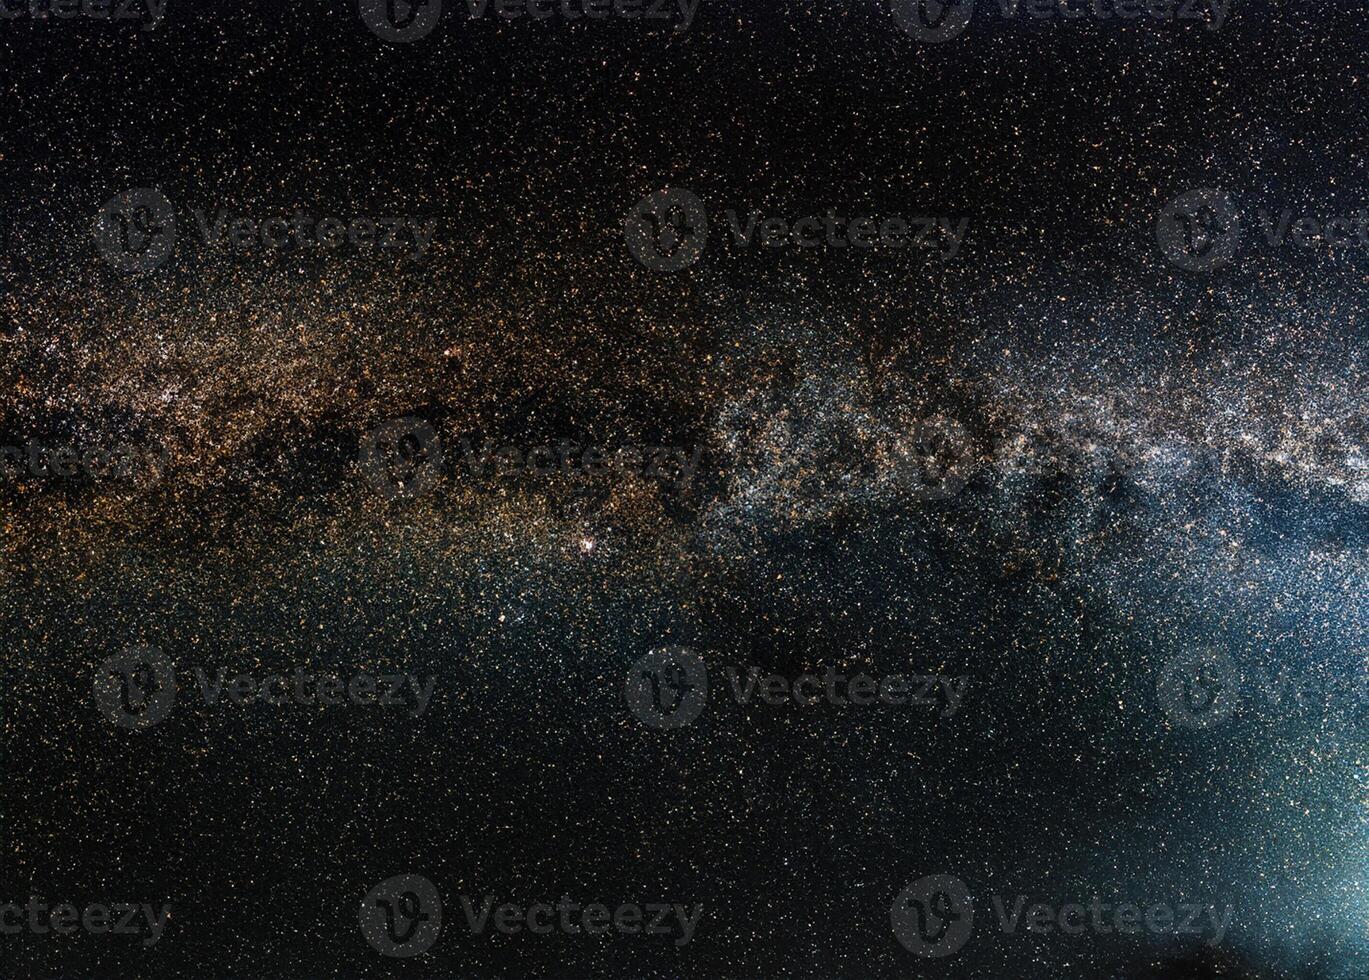 noche cielo, muchos estrellas con lechoso camino alrededor Cefeo y cygnus constelación, Andrómeda galaxia visible en inferior izquierda esquina. largo exposición apilado foto